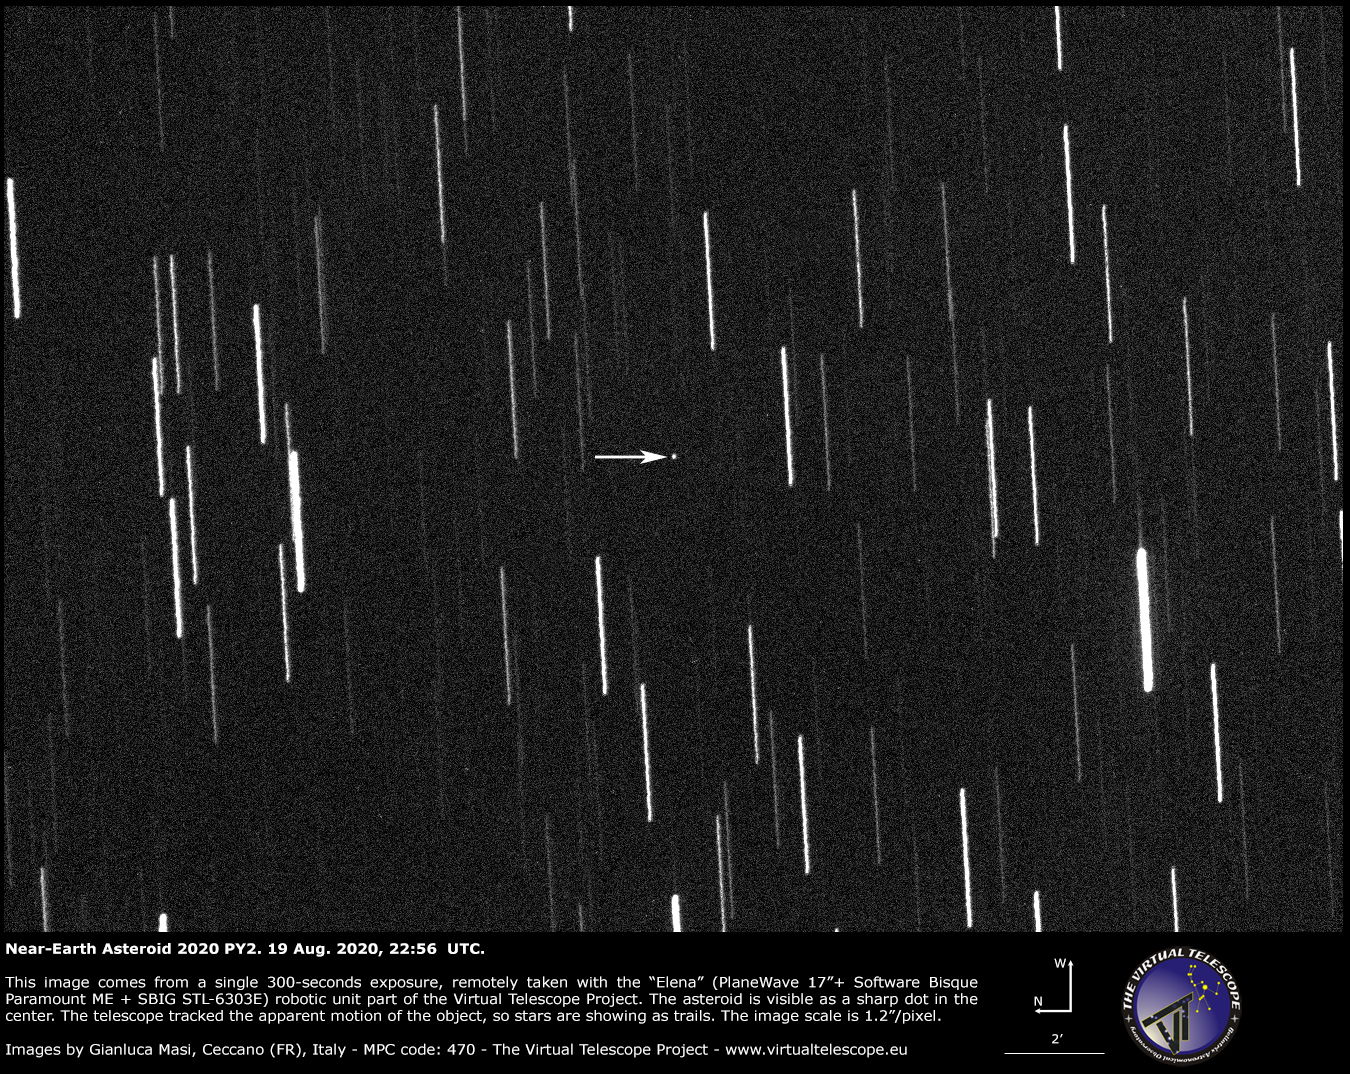 Near-Earth Asteroid 2020 PY2 - 19 Aug. 2020.